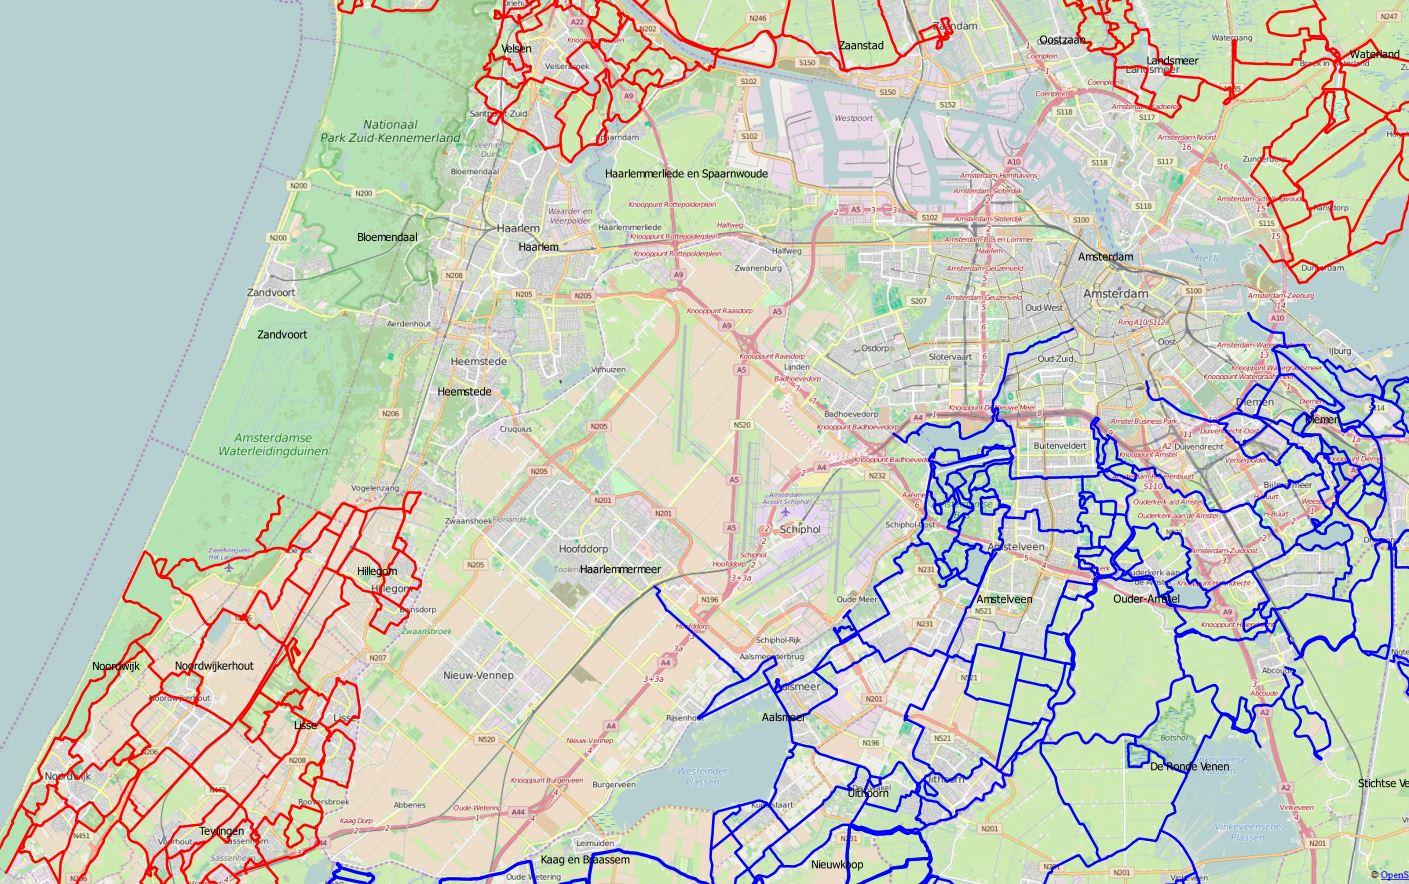 Vanuit het routebureau van Recreatie Noord-Holland stellen wij aan de gemeenten en terreinbeheerders in Zuid-Kennemerland voor om een quick scan te laten uitvoeren naar de mogelijke opzet van een